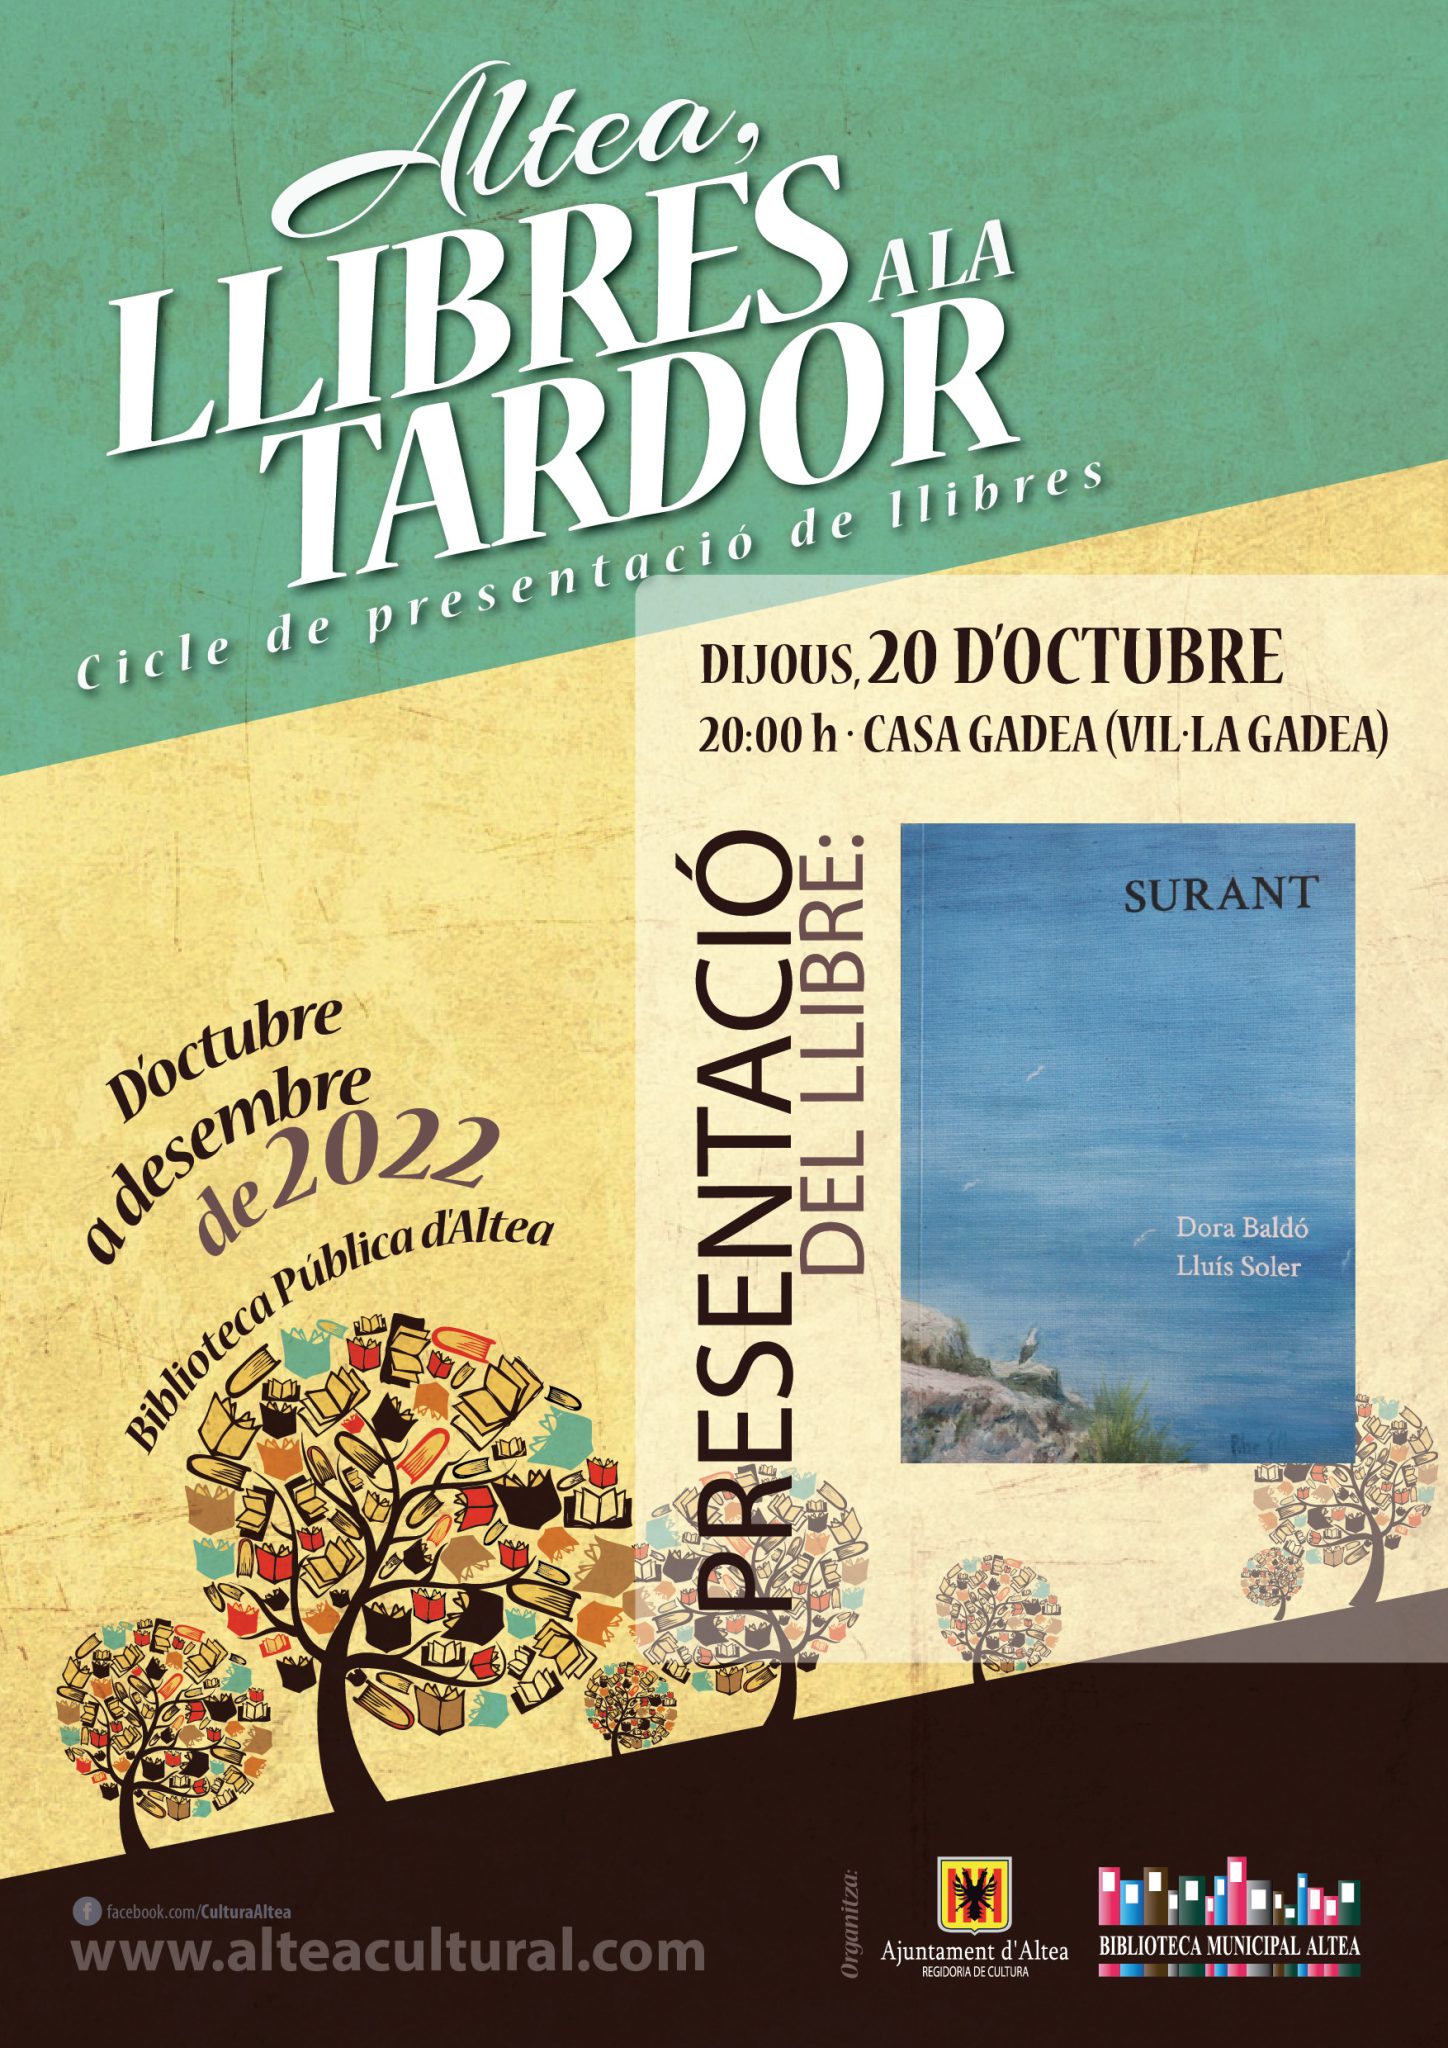 El próximo jueves se presentará en Altea, llibres a la tardor ‘Surant’ de Dora Baldó y Lluís Soler. A las 20:00 horas en Casa Gadea.